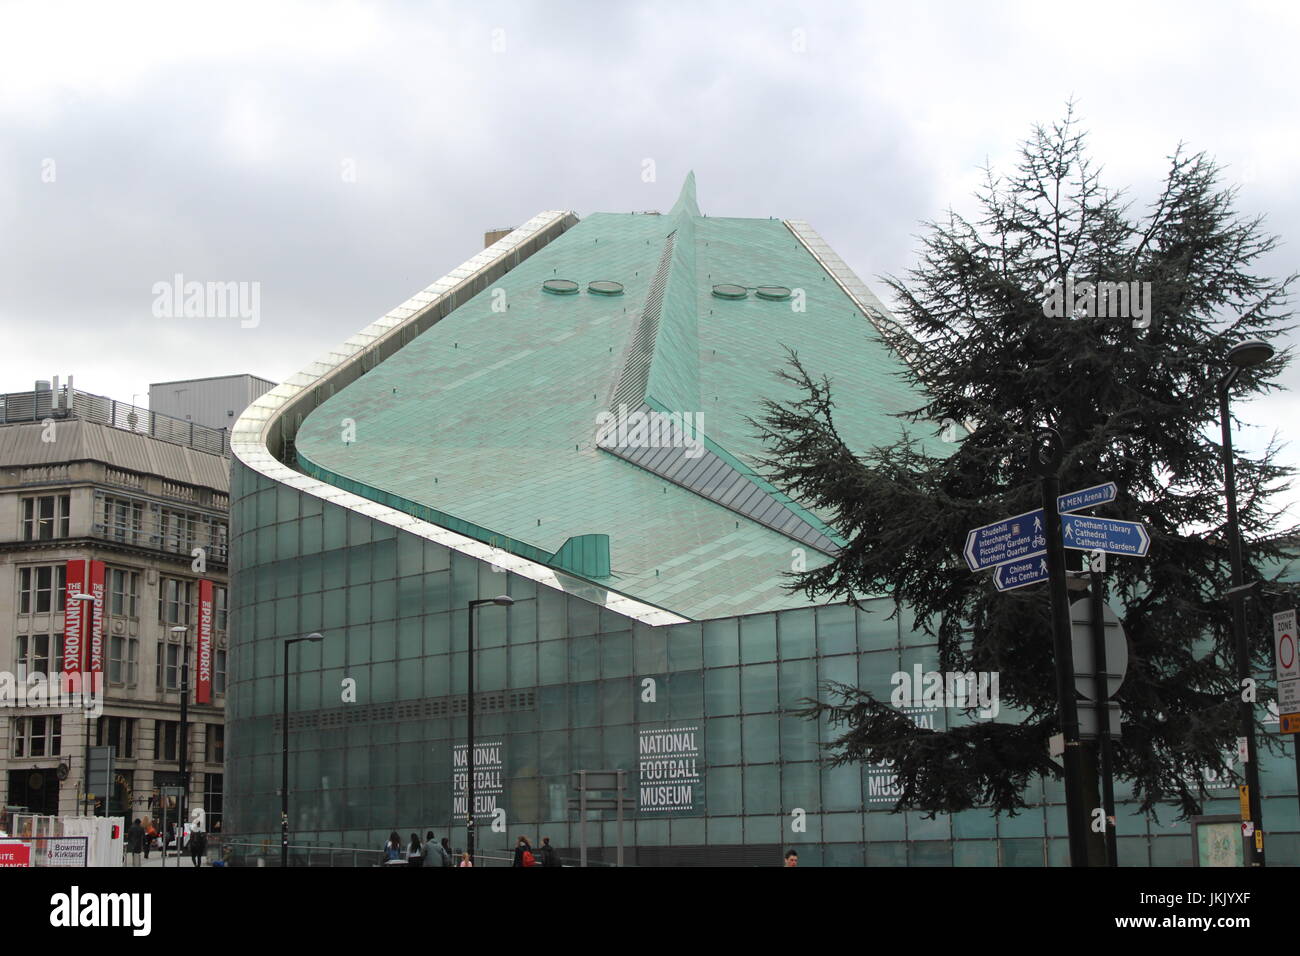 El techo de cristal inclinado de la Urbis edificio que alberga el Museo Nacional del fútbol en Manchester, Inglaterra Foto de stock